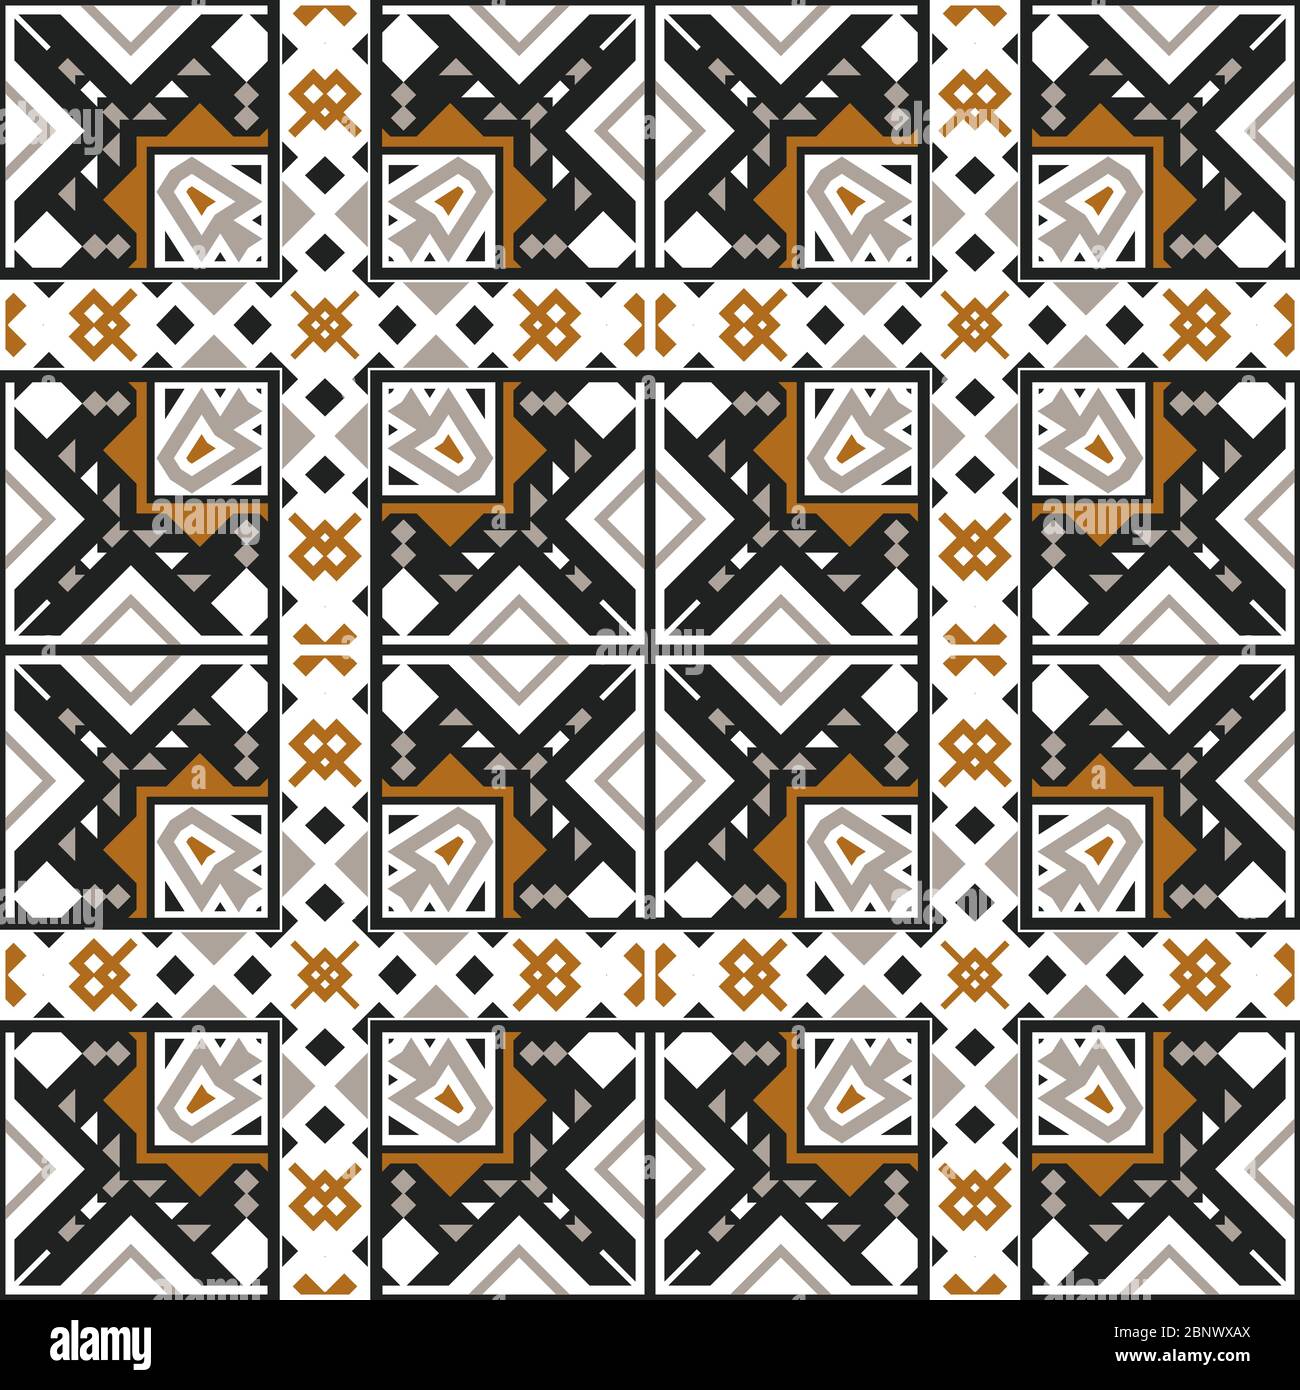 The Rich History and Vibrant Beauty of Batik Fabric - Carolina Oneto